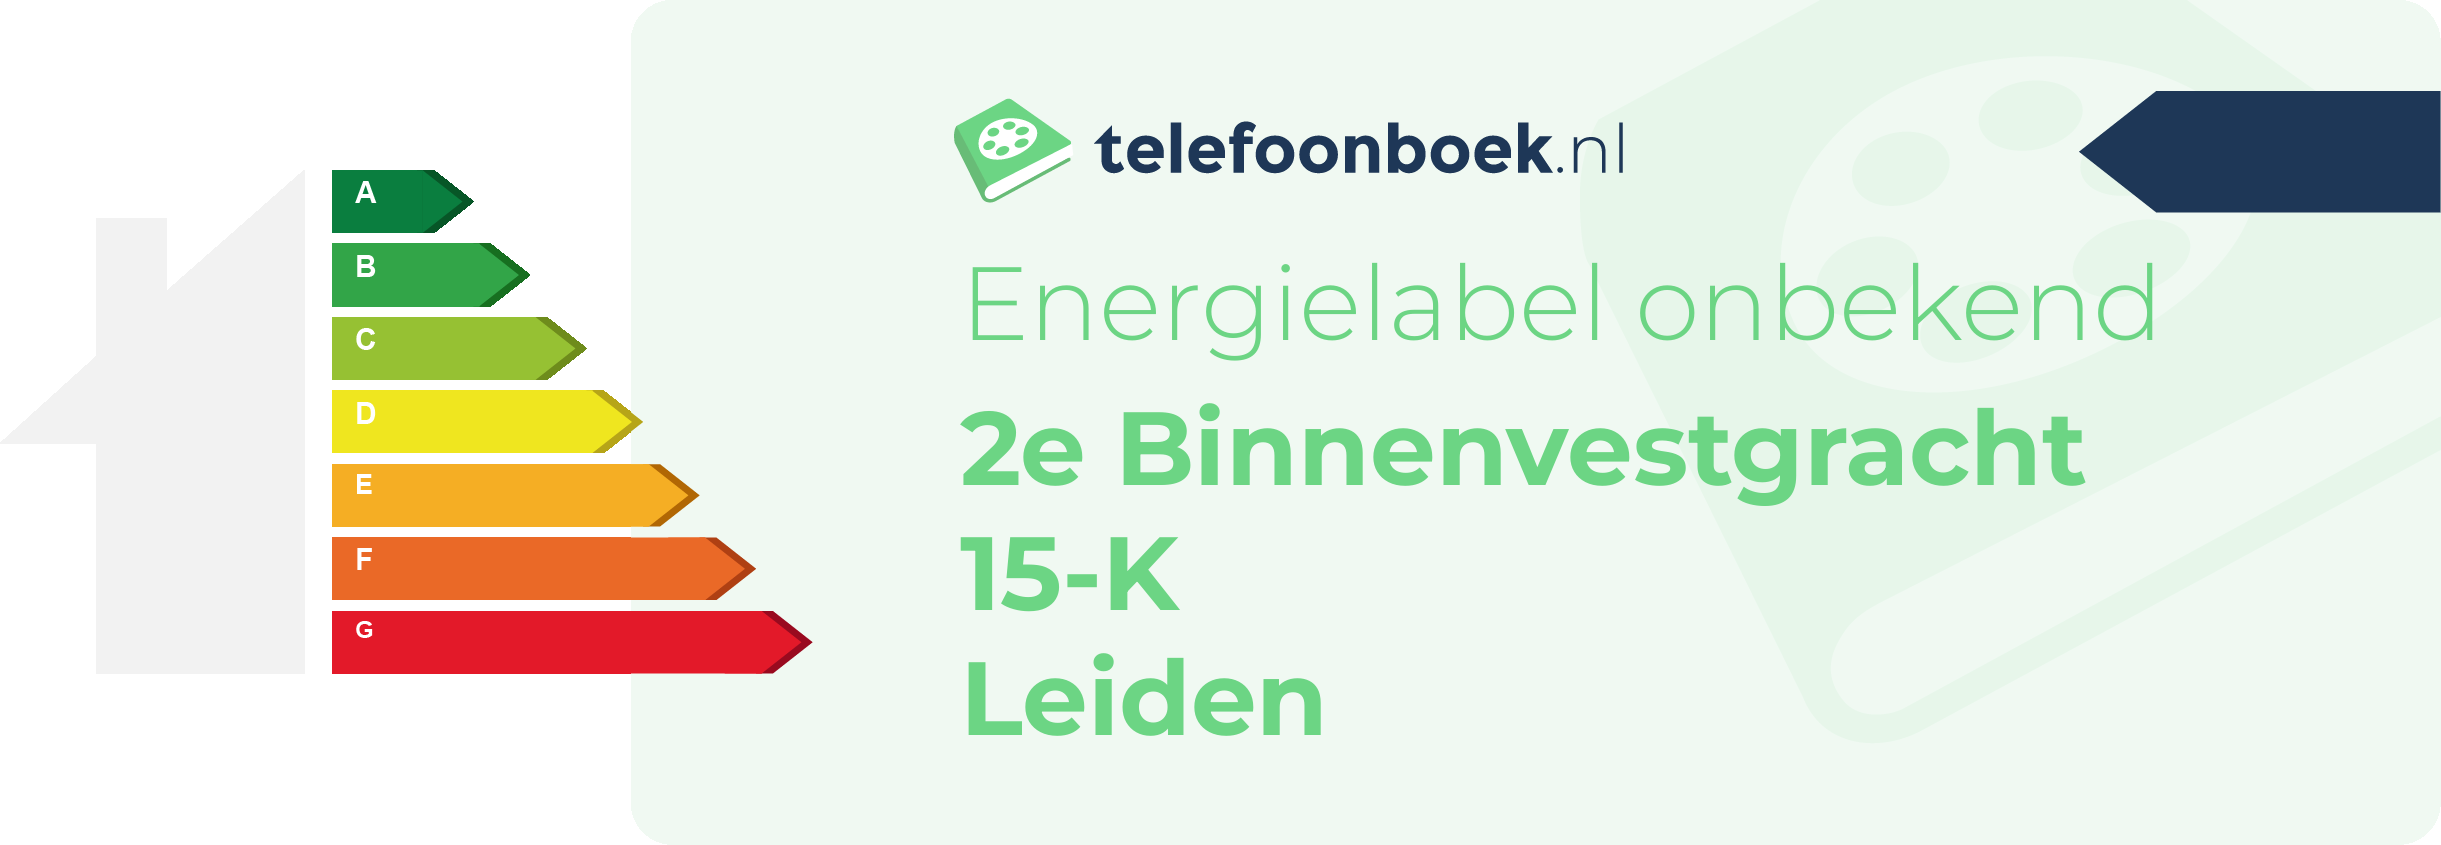 Energielabel 2e Binnenvestgracht 15-K Leiden